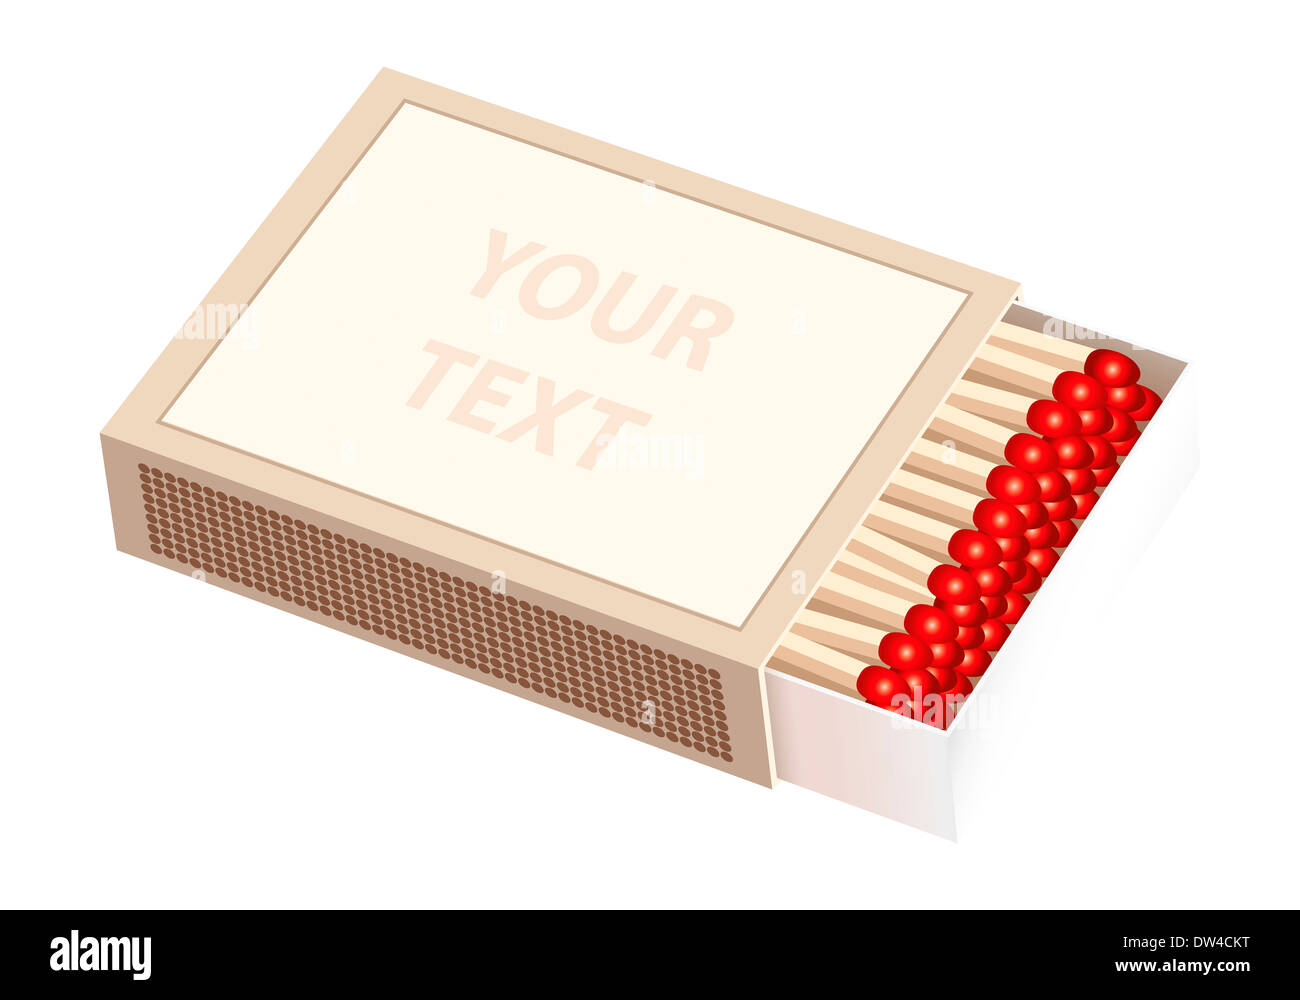 Aprire spinto matchbox - il fustellato anteriore della scatola possono essere etichettati individualmente. Foto Stock